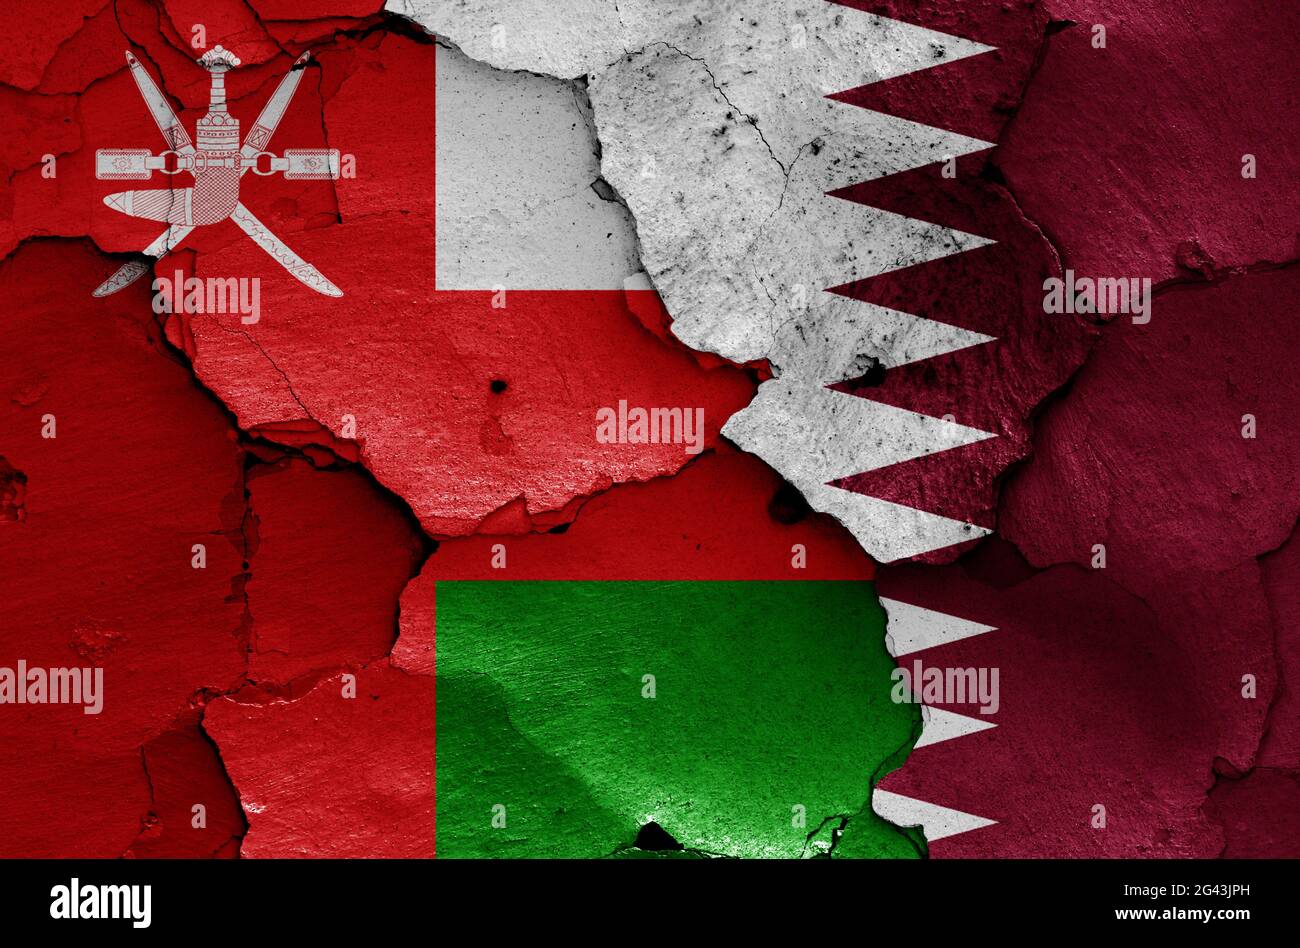 Flaggen von Oman und Katar auf rissige Wand gemalt Stockfoto